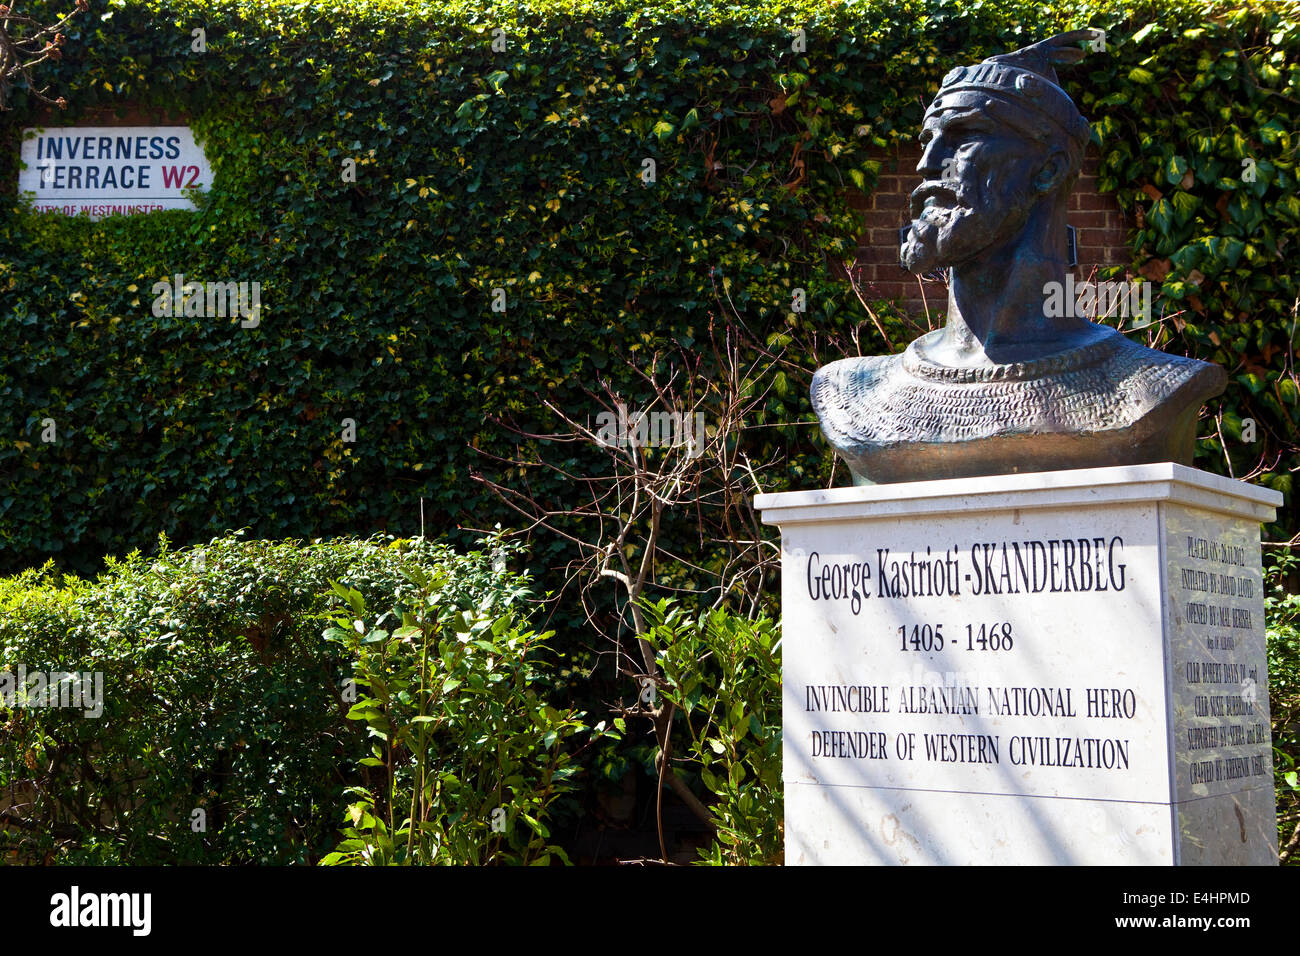 Eine Gedenkstätte Büste der albanischen nationalen Helden George Kastrioti-Skanderberg auf Inverness Terrace in London. Stockfoto